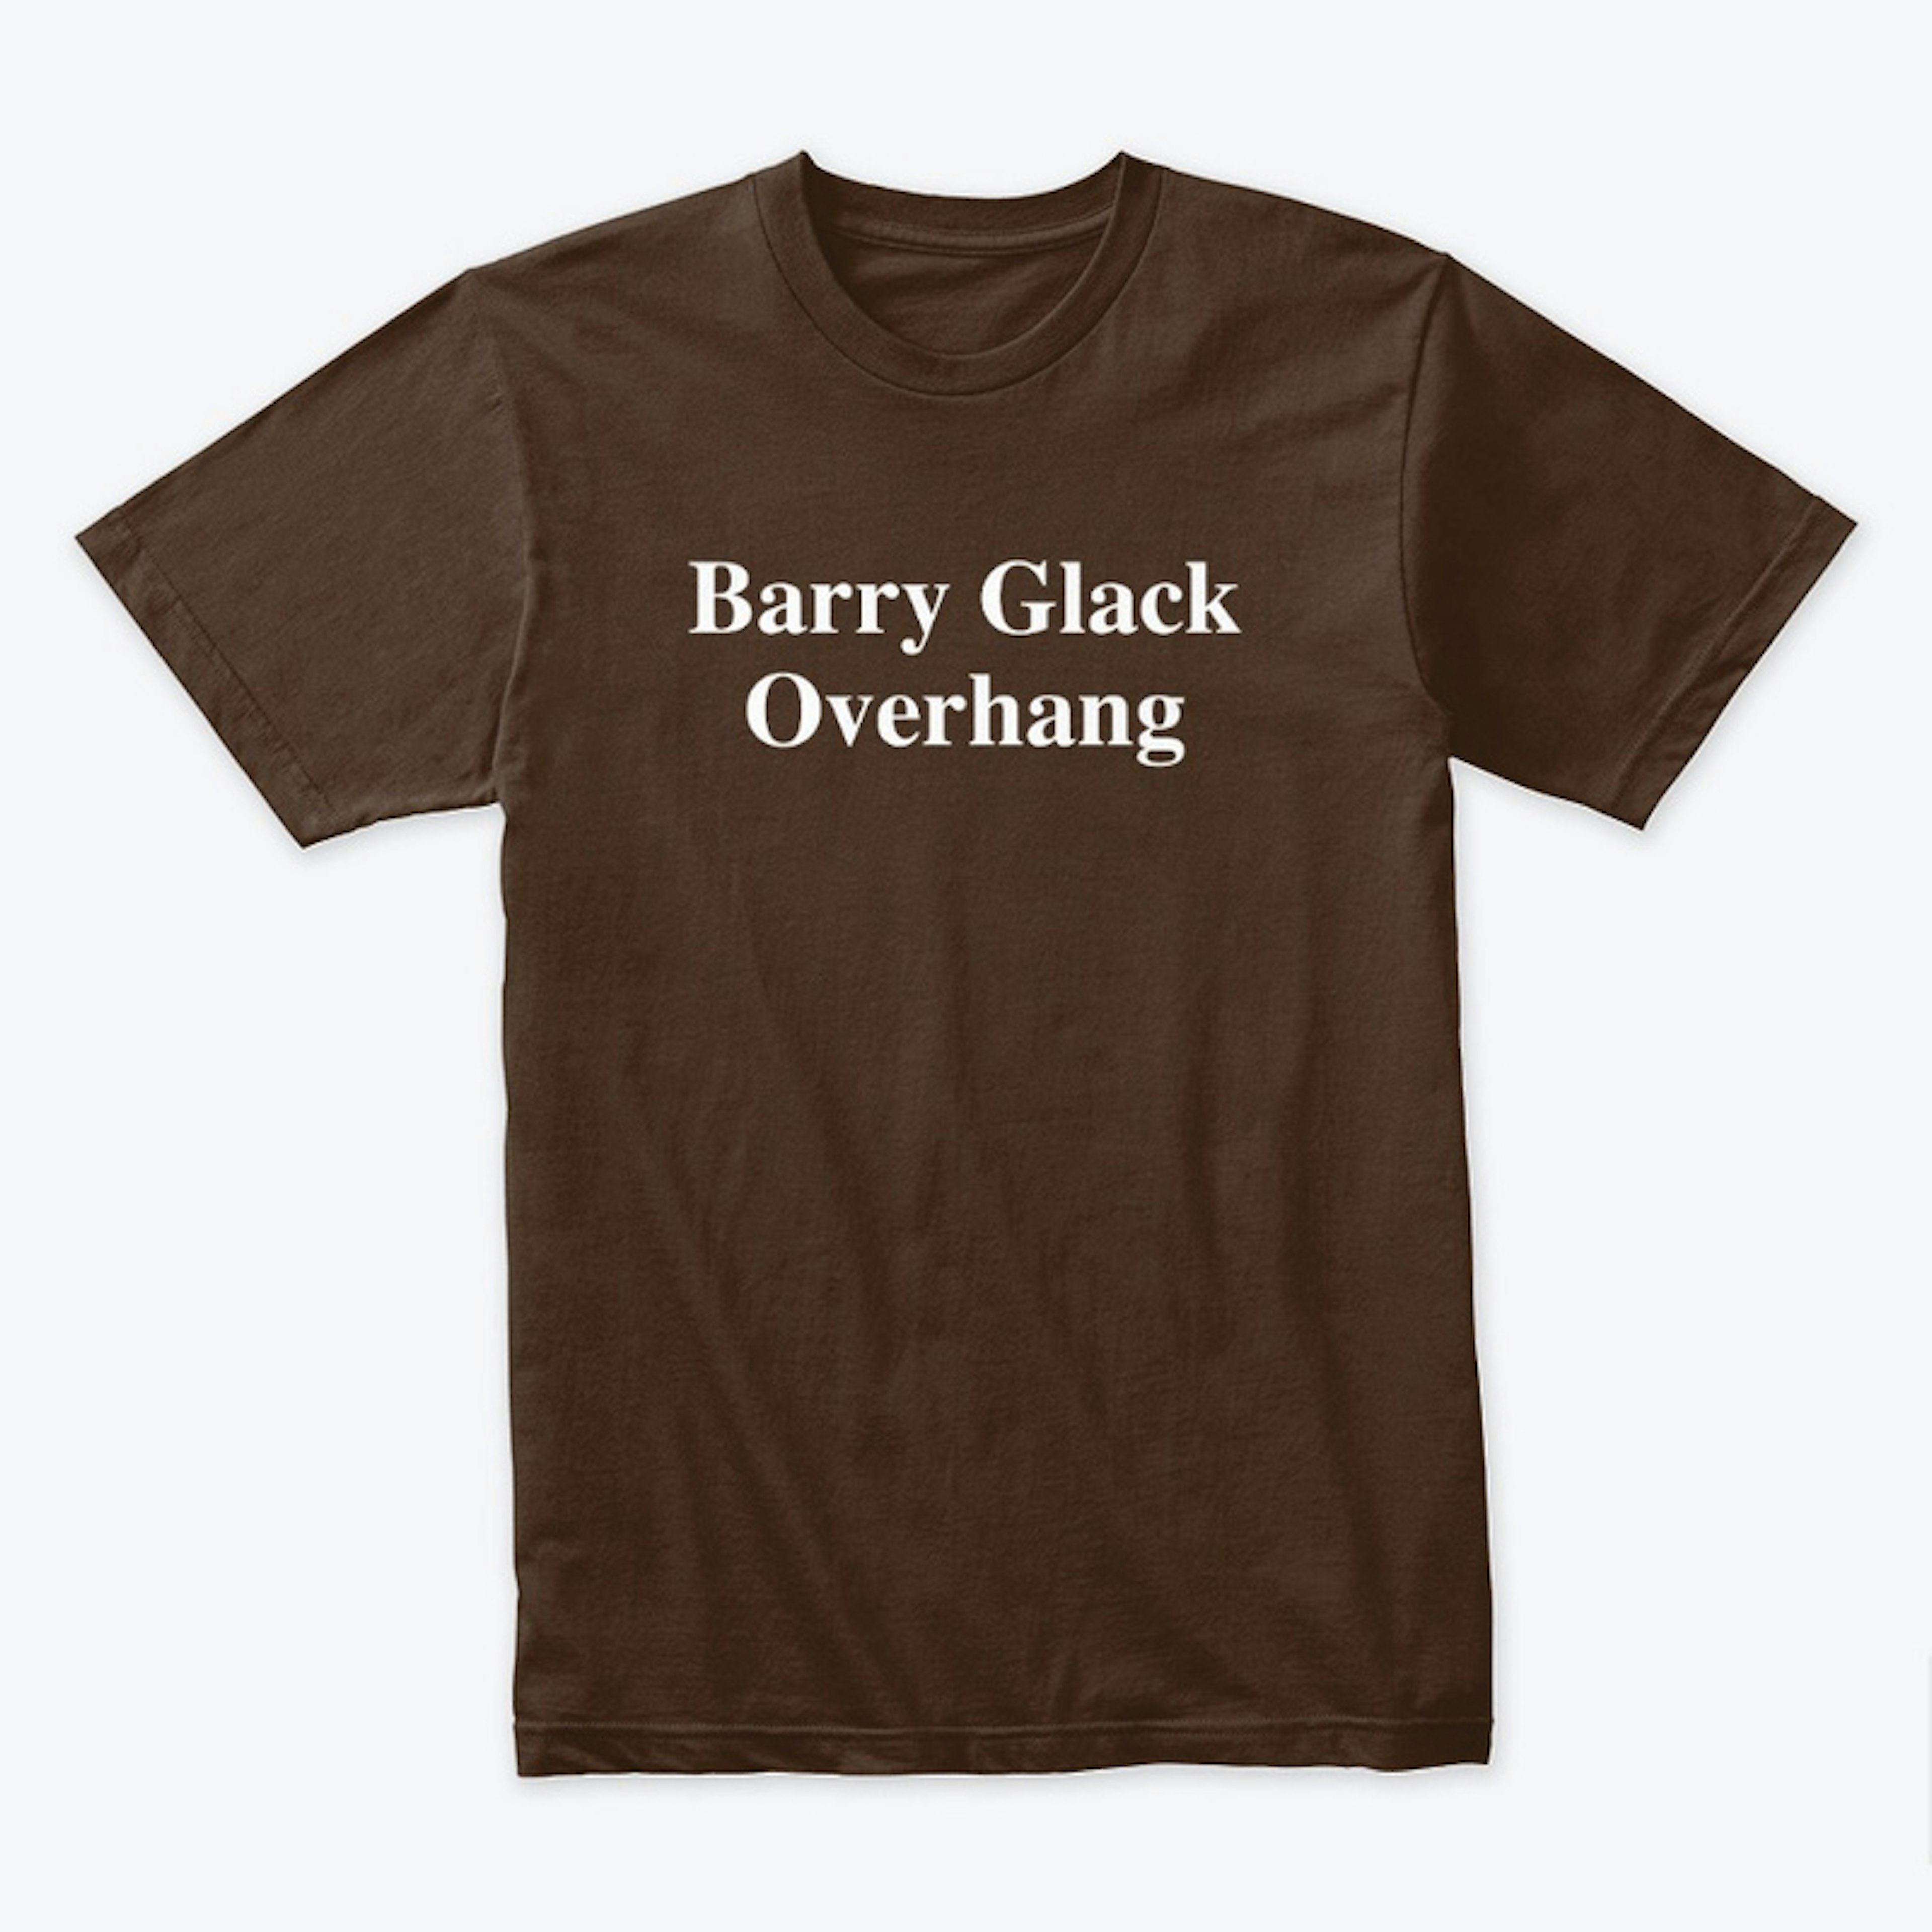 Barry Glack Overhang